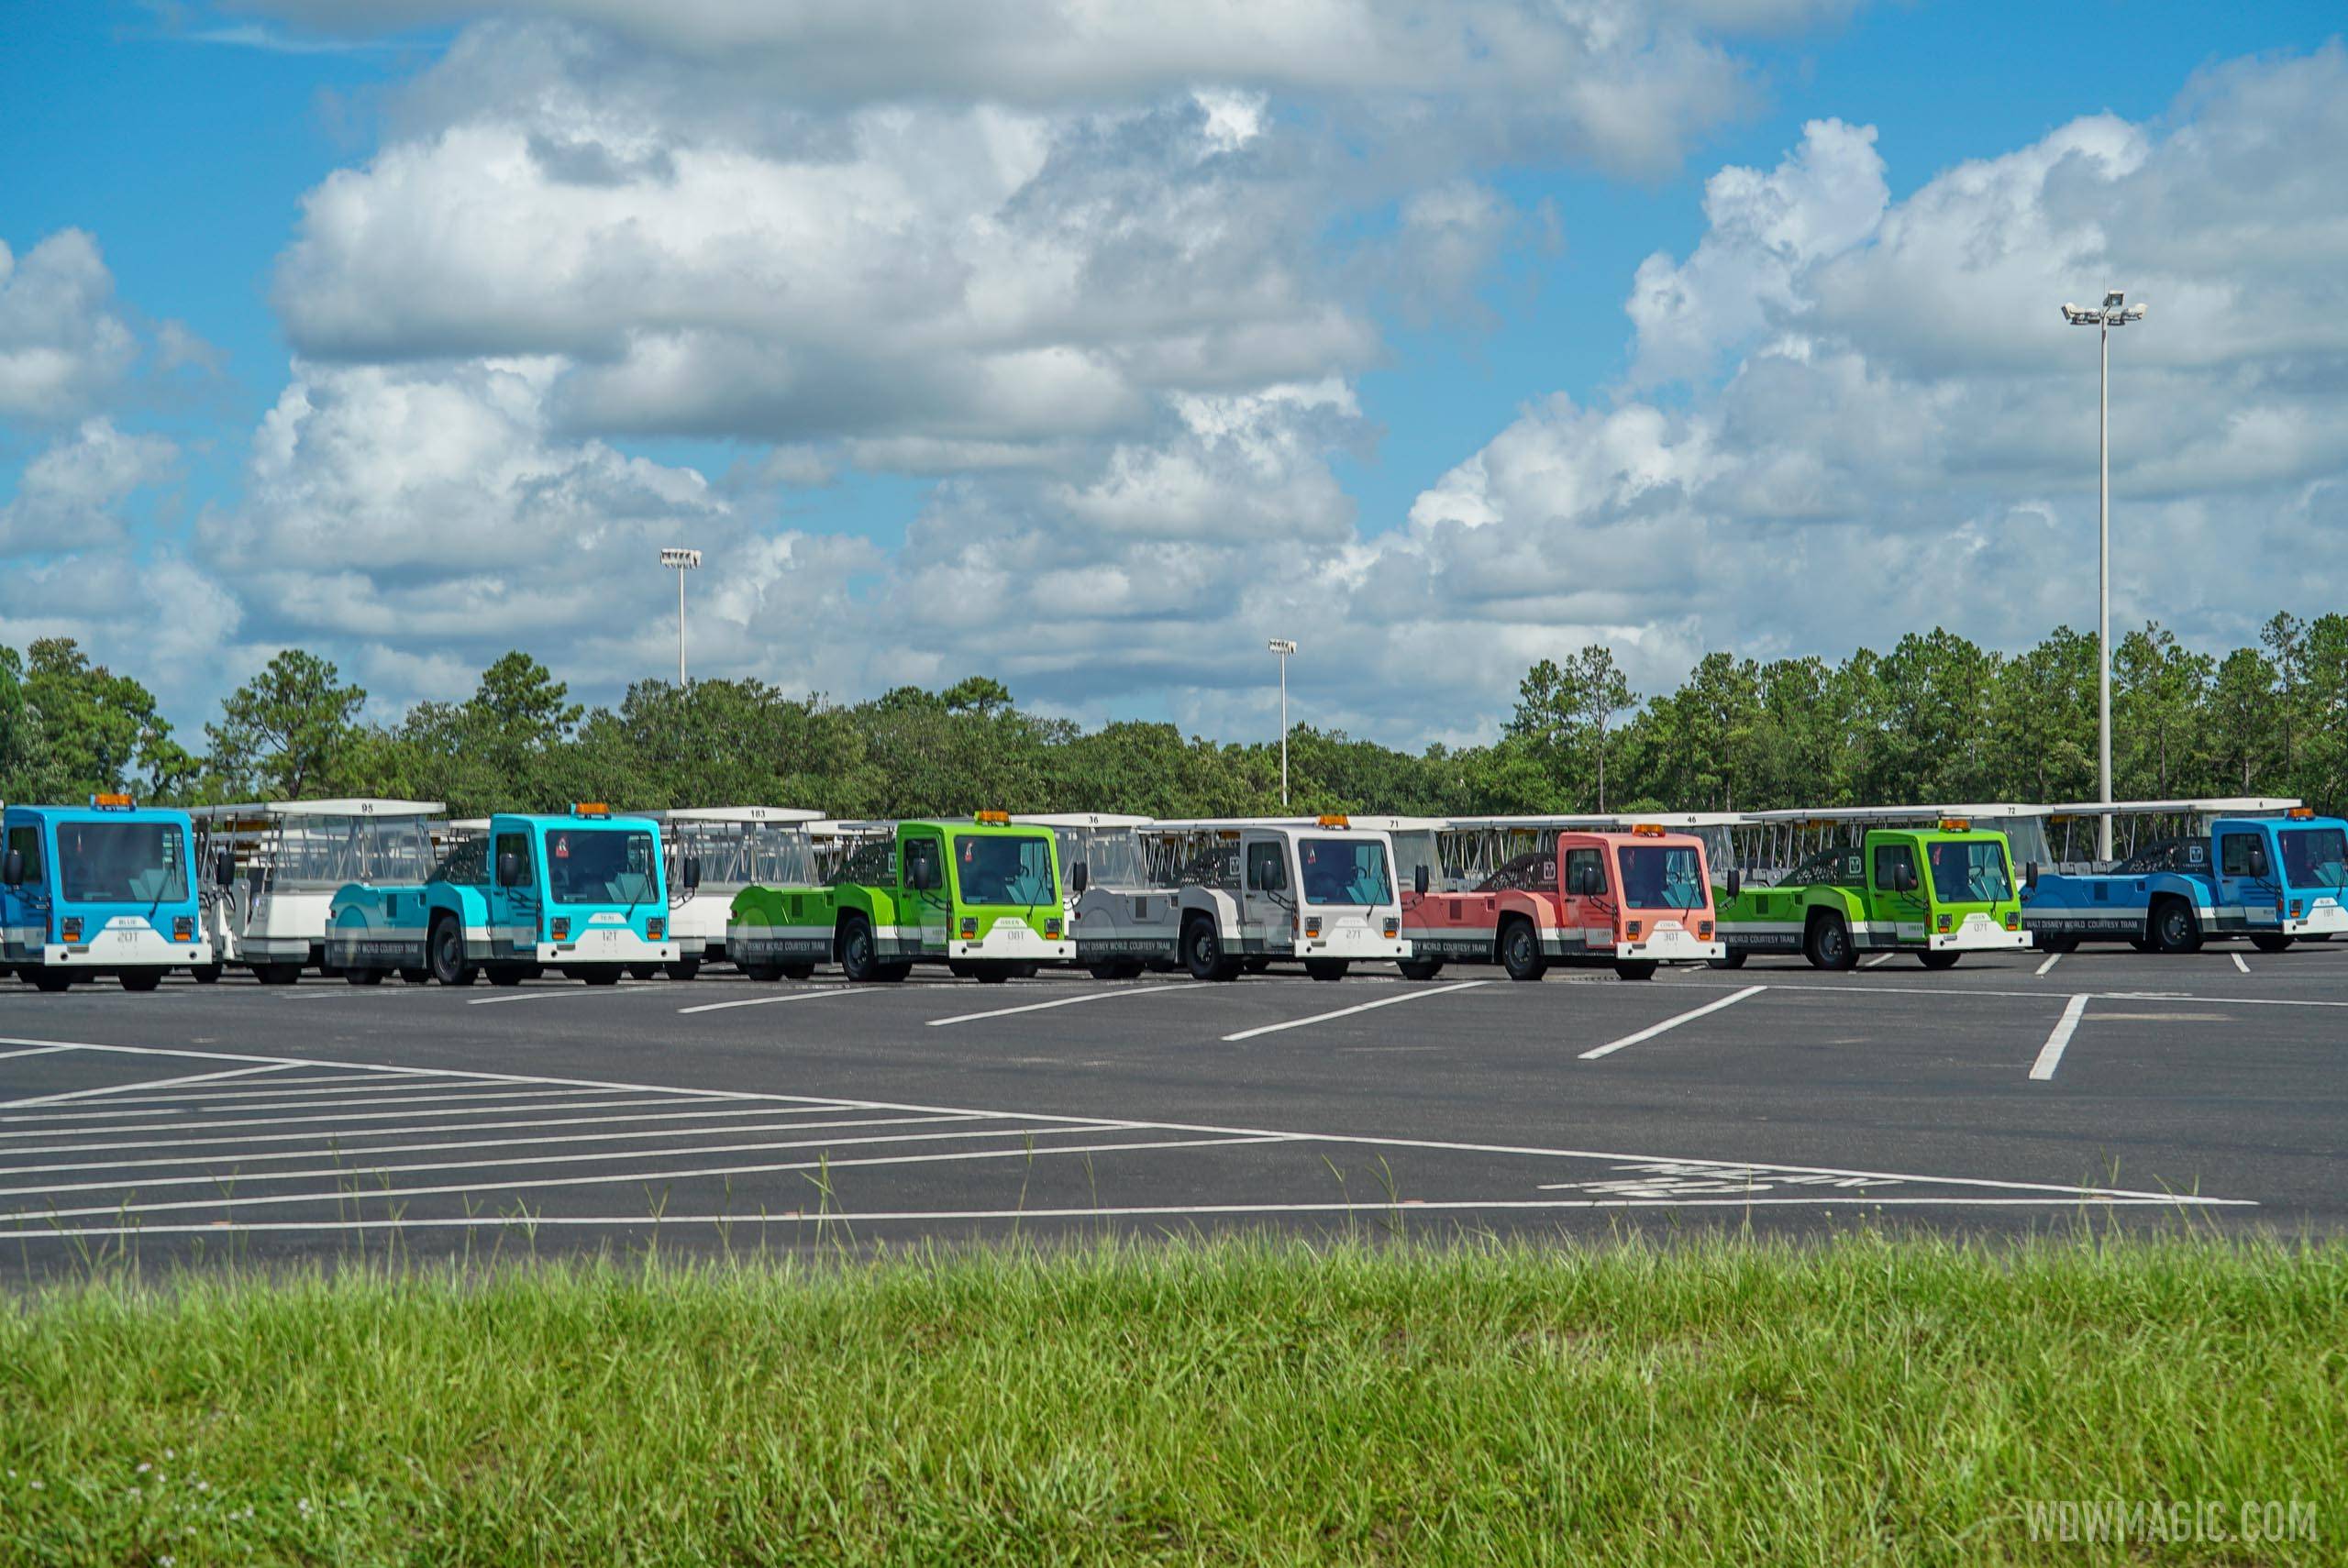 TTC Magic Kingdom Parking Lot Trams 2020